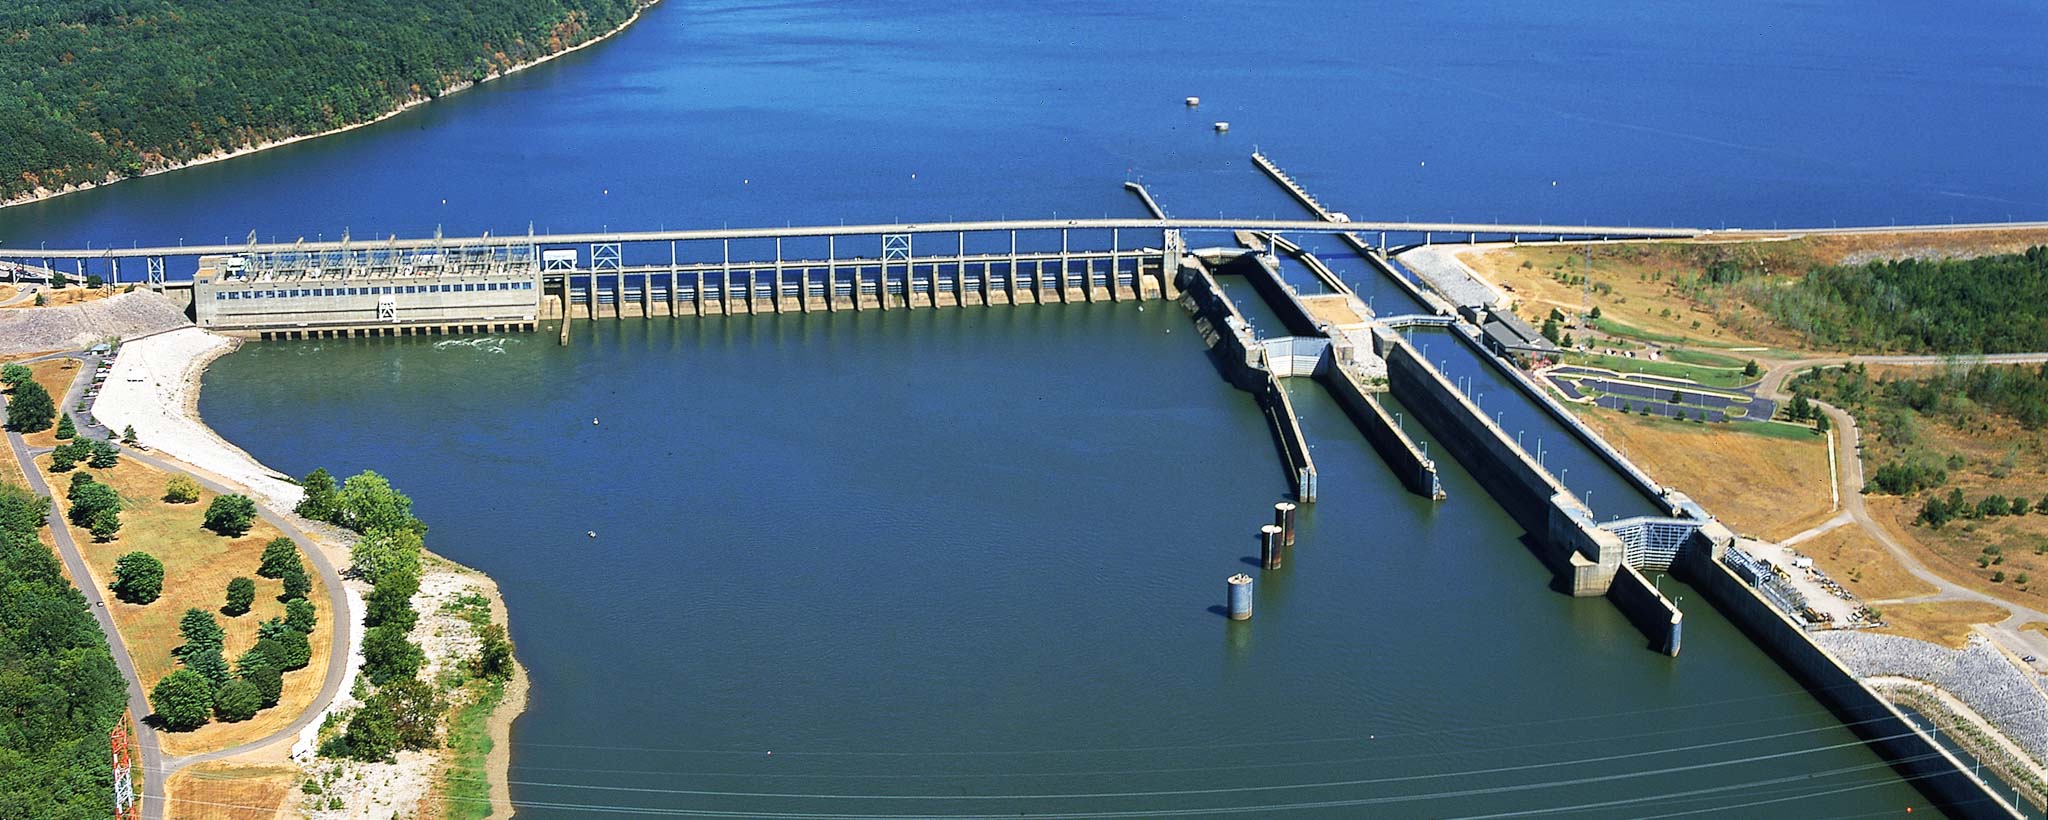 How TVA Safeguards Its Dams